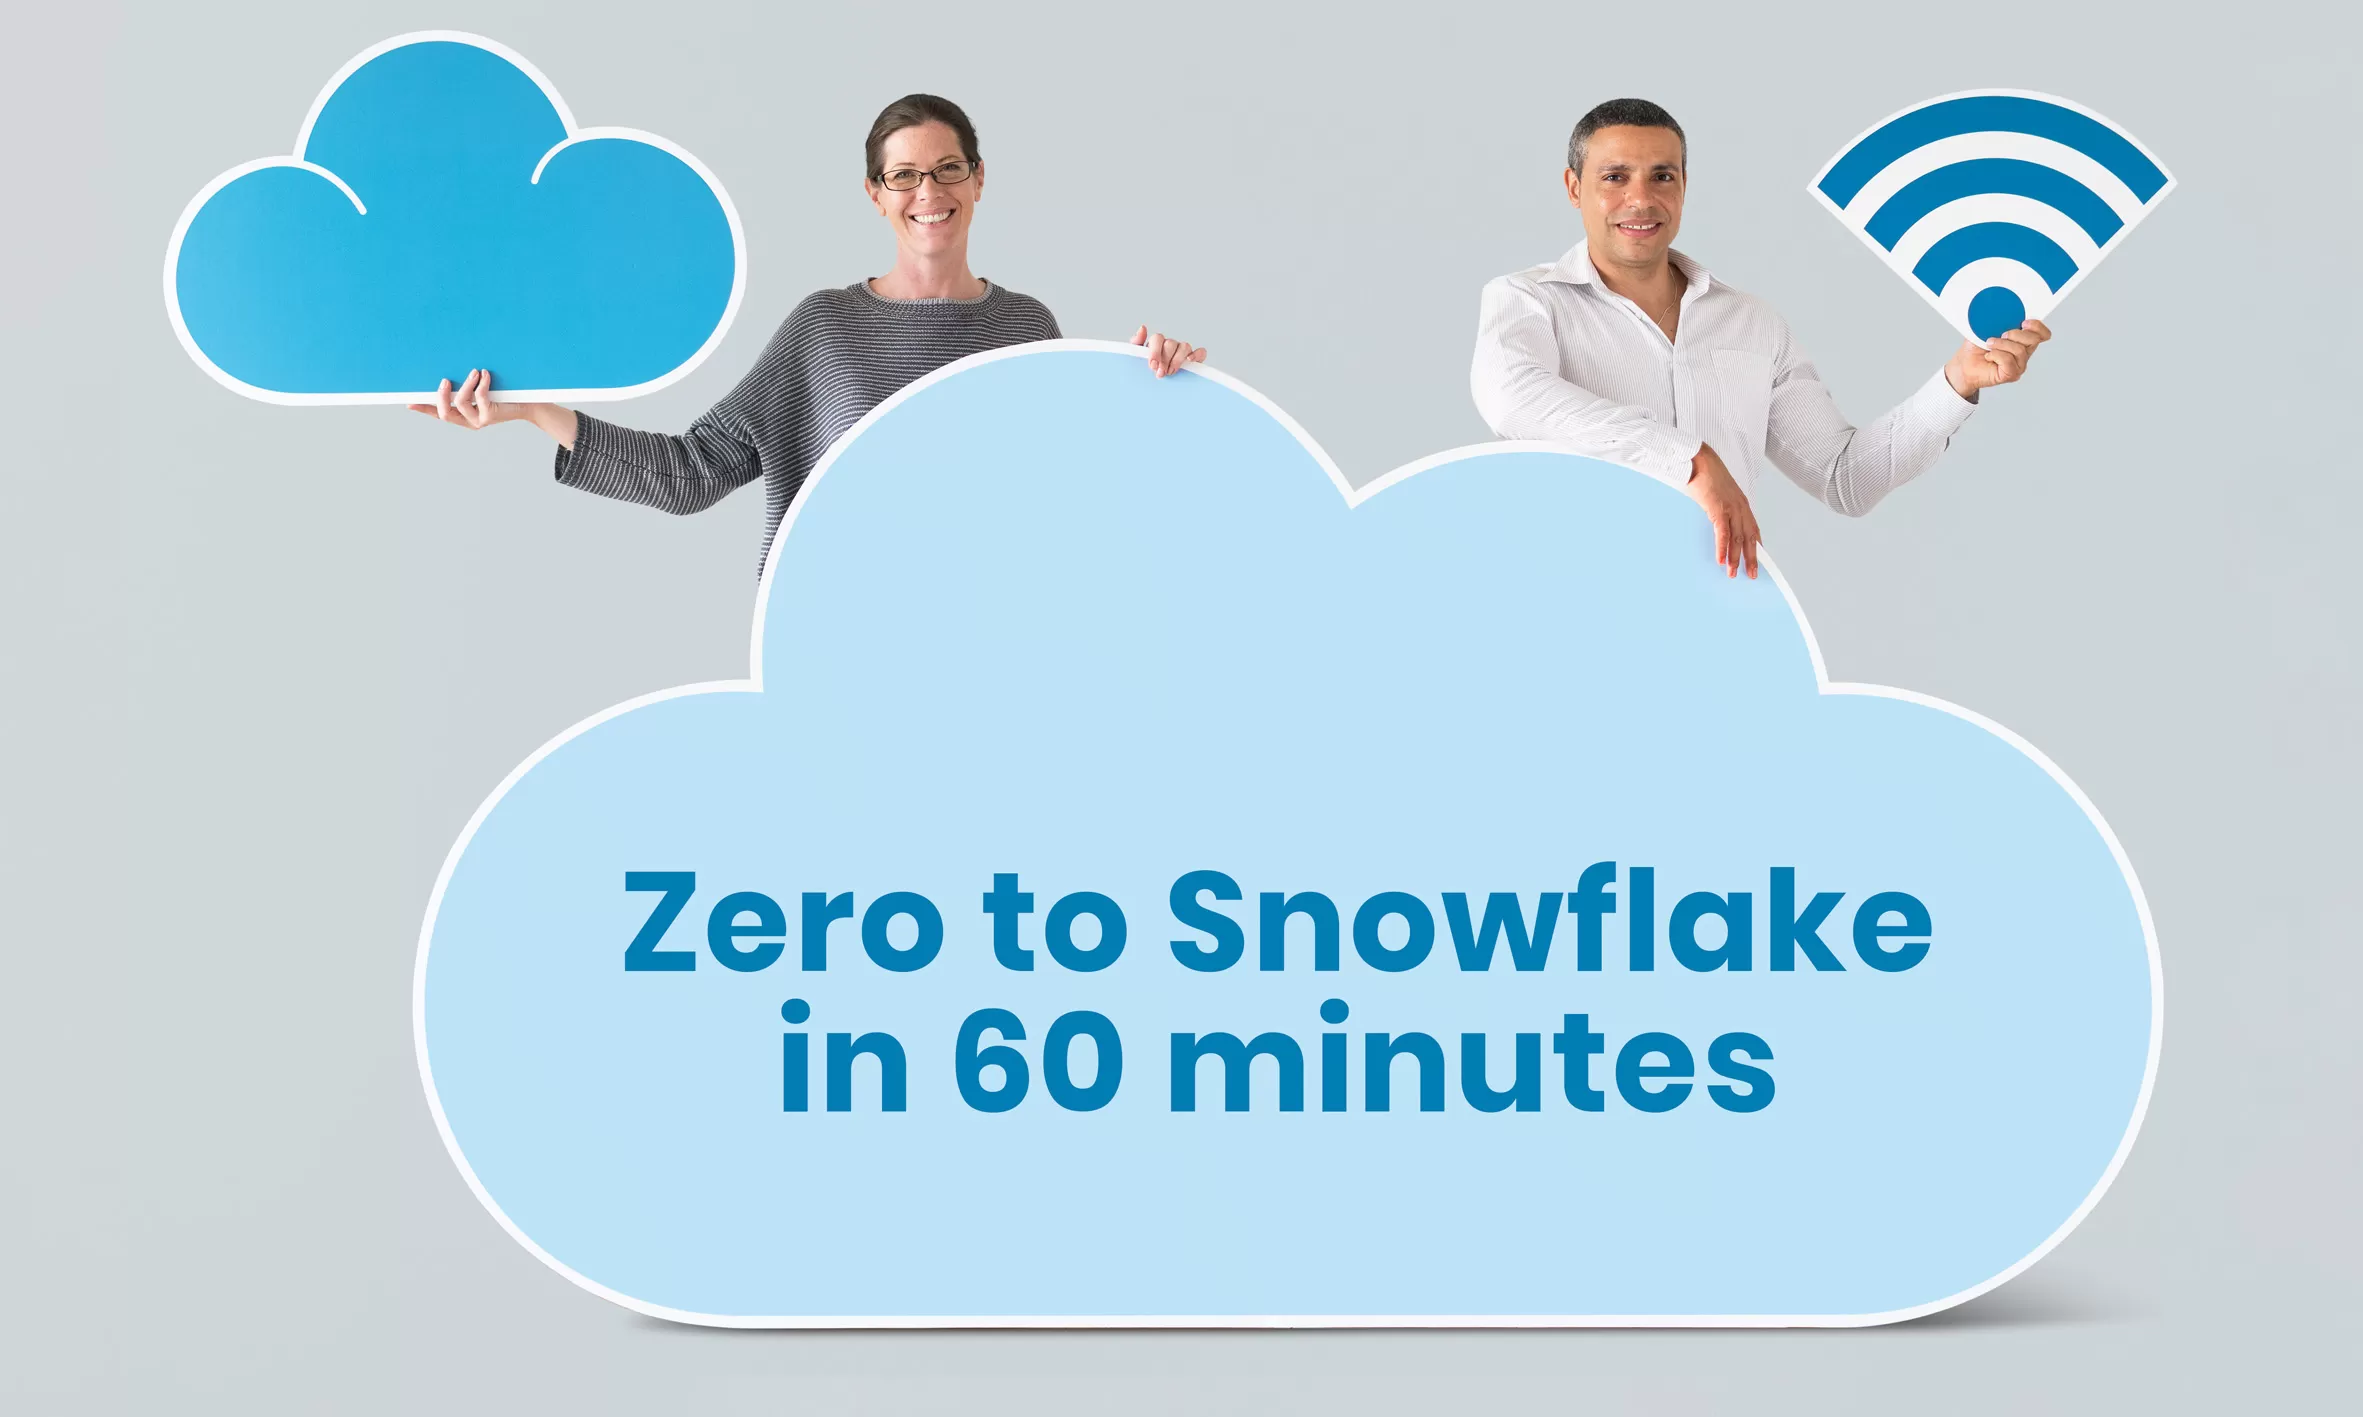 Zero to Snowflake in 60 minutes